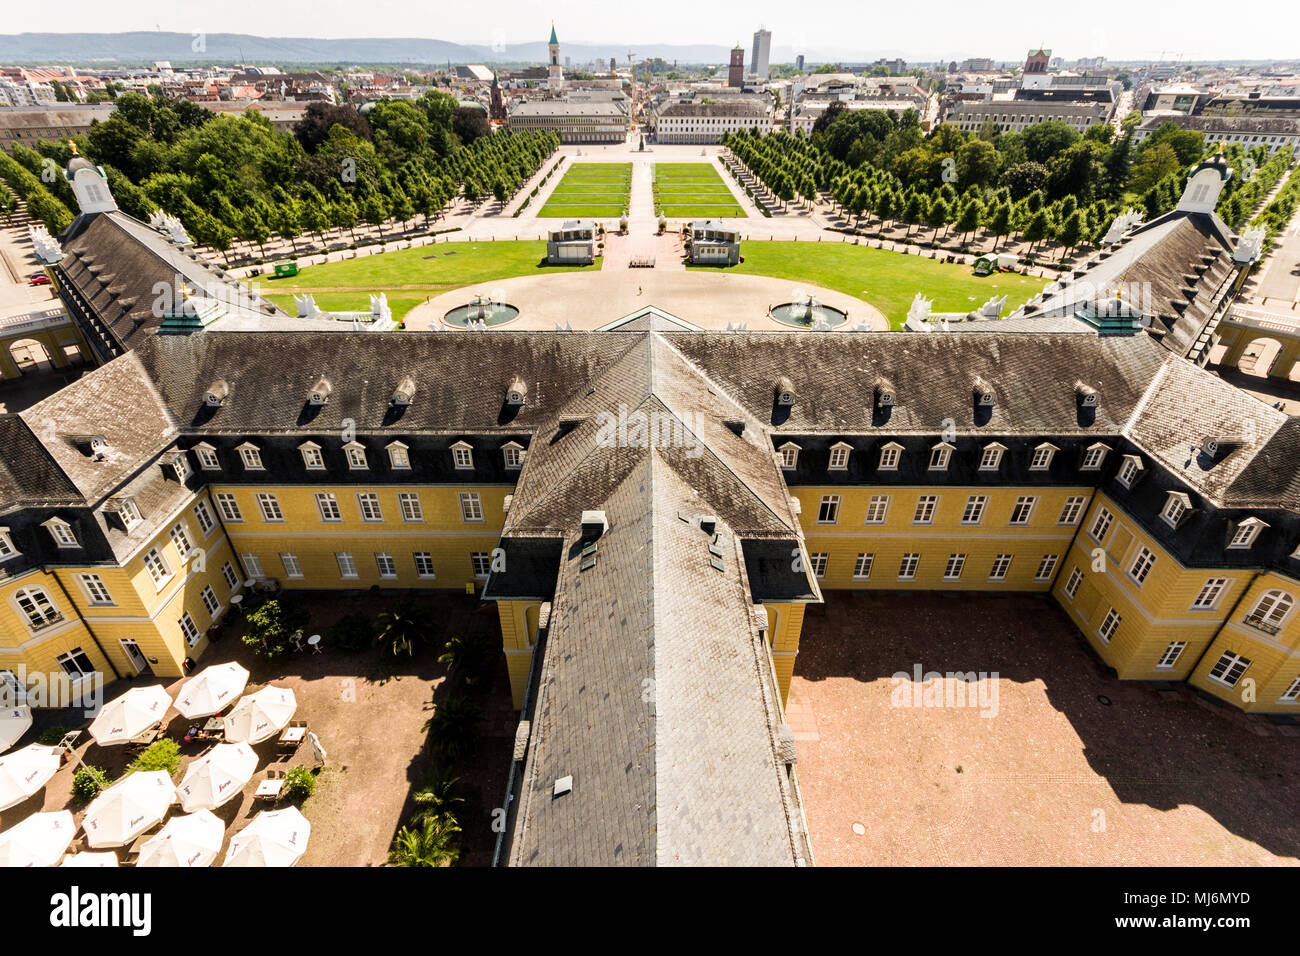 Blick auf die Stadt Karlsruhe vom Turm der Karlsruher Schloss (Karlsruher Schloss). Baden-württemberg, Deutschland Stockfoto